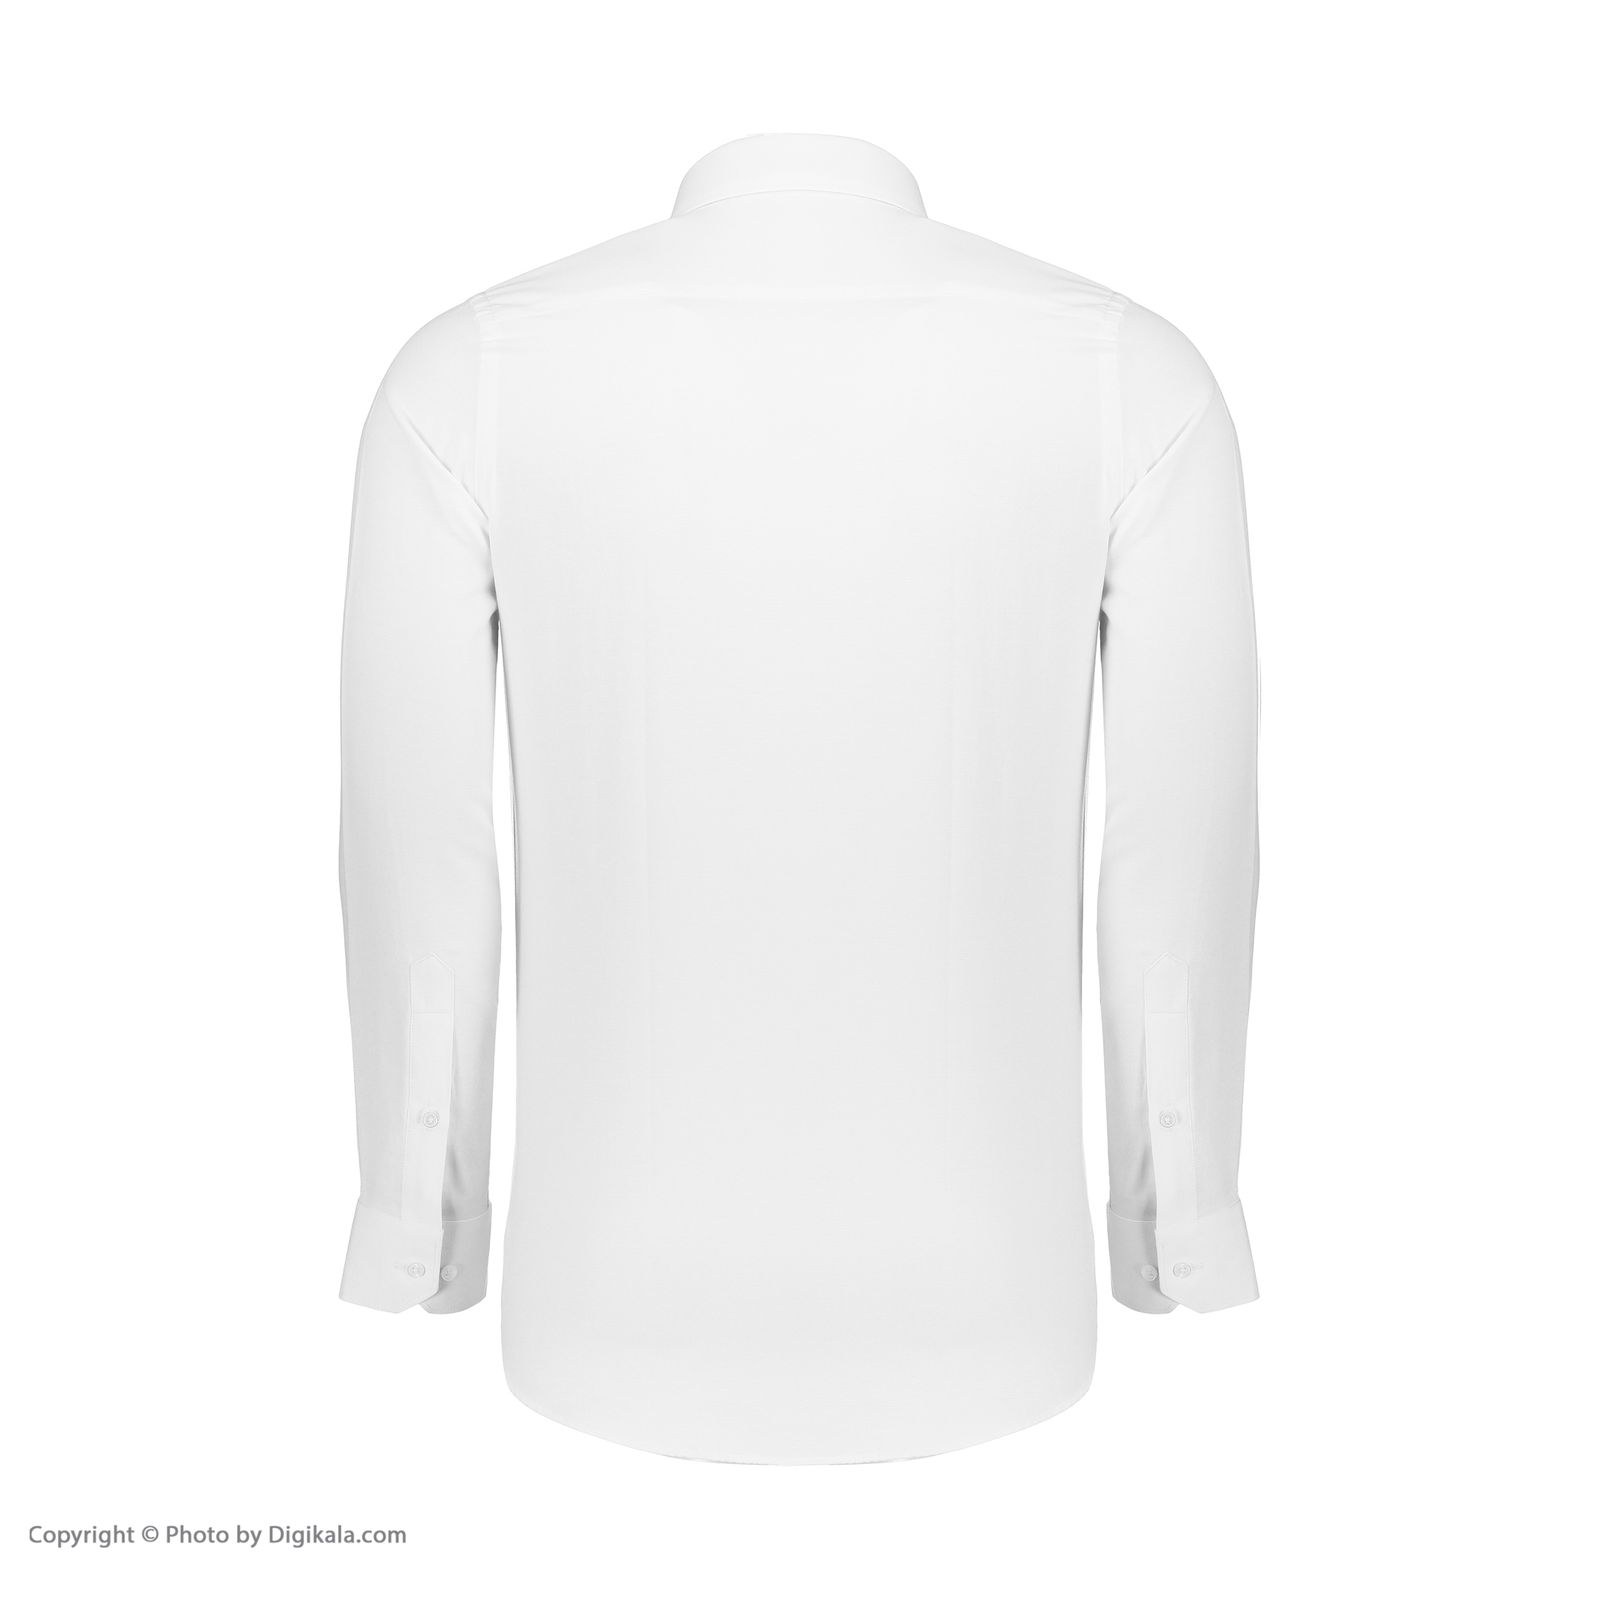 پیراهن مردانه اکزاترس مدل I012001001360001-001 -  - 4